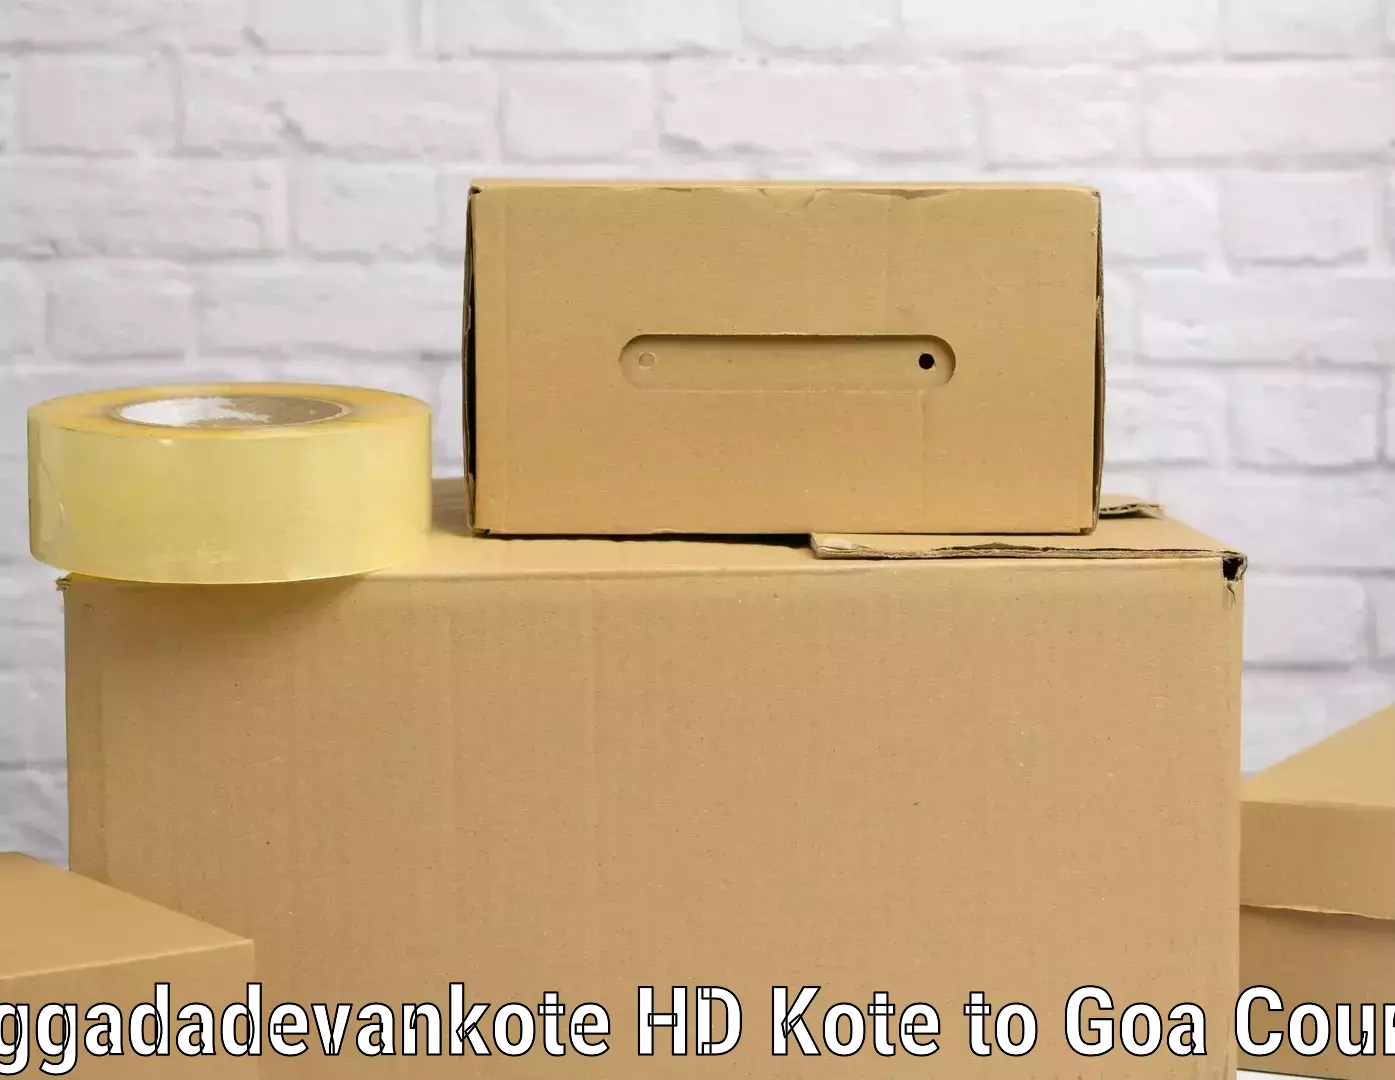 Affordable luggage shipping Heggadadevankote HD Kote to Goa